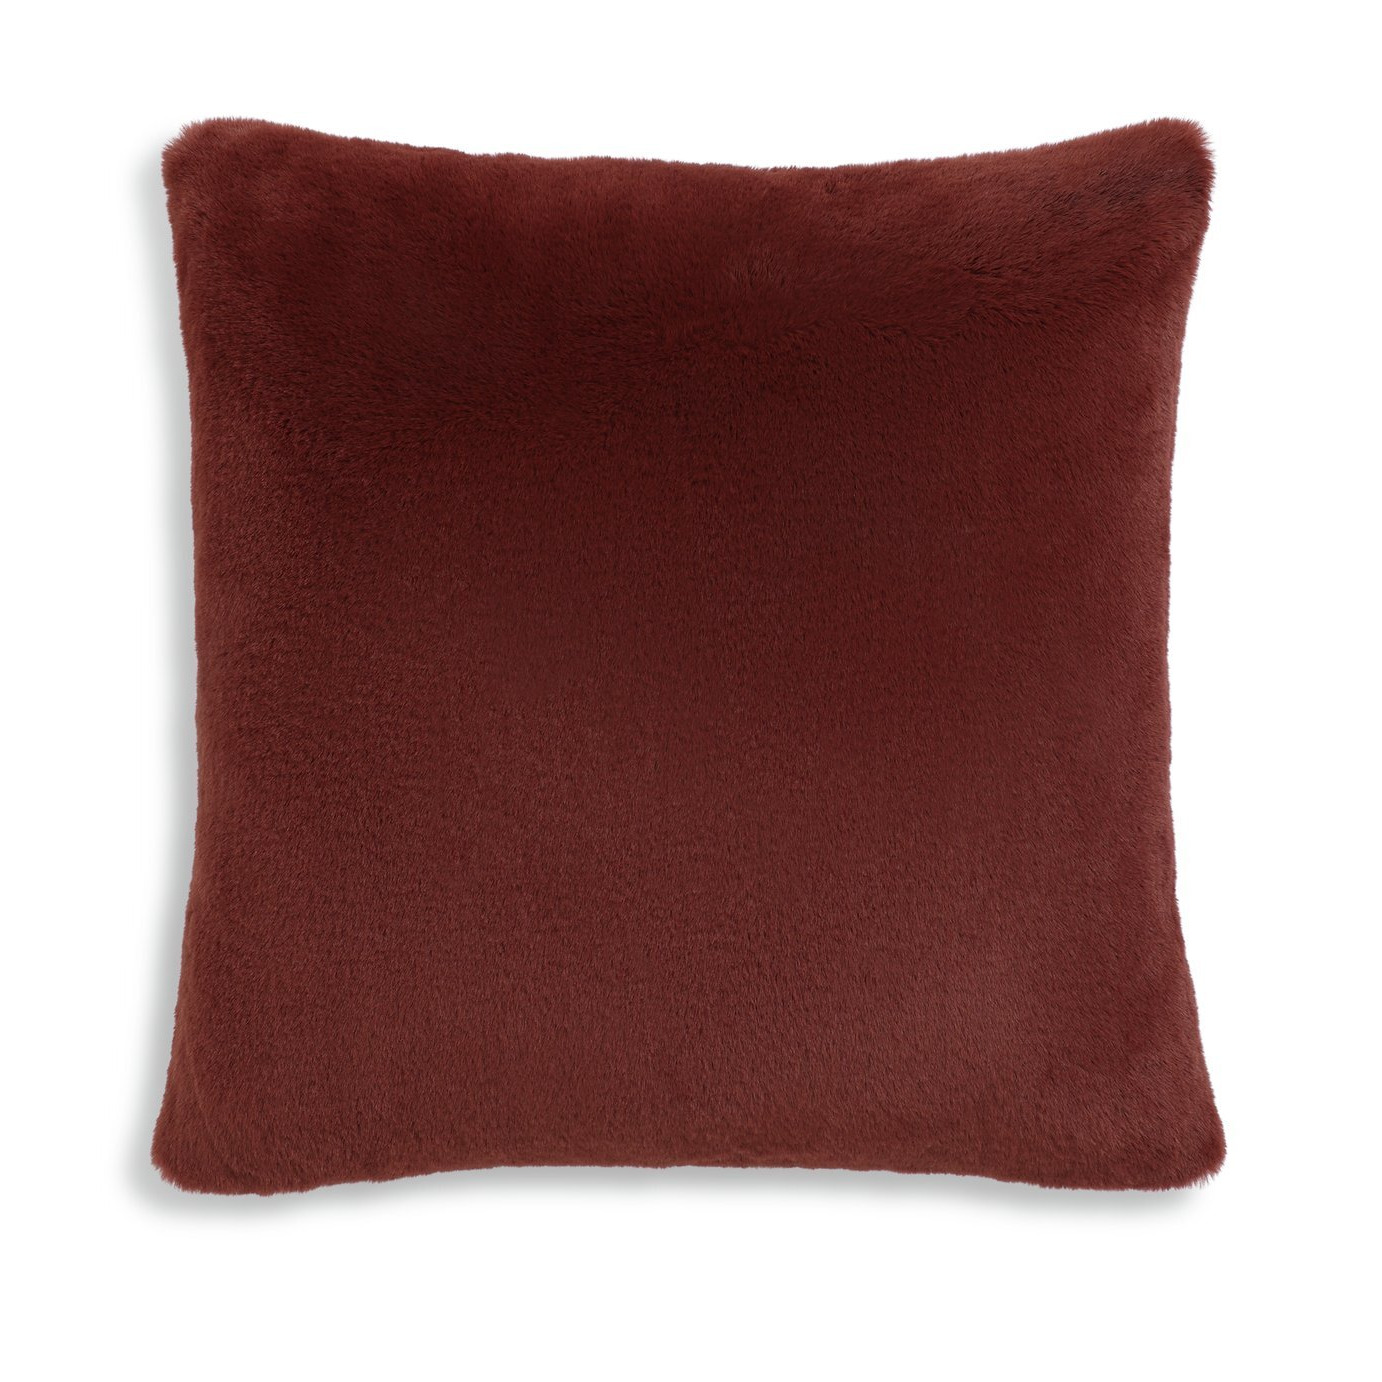 Habitat Textured Cushion Cover - Burnt Orange - 43X43cm - image 1